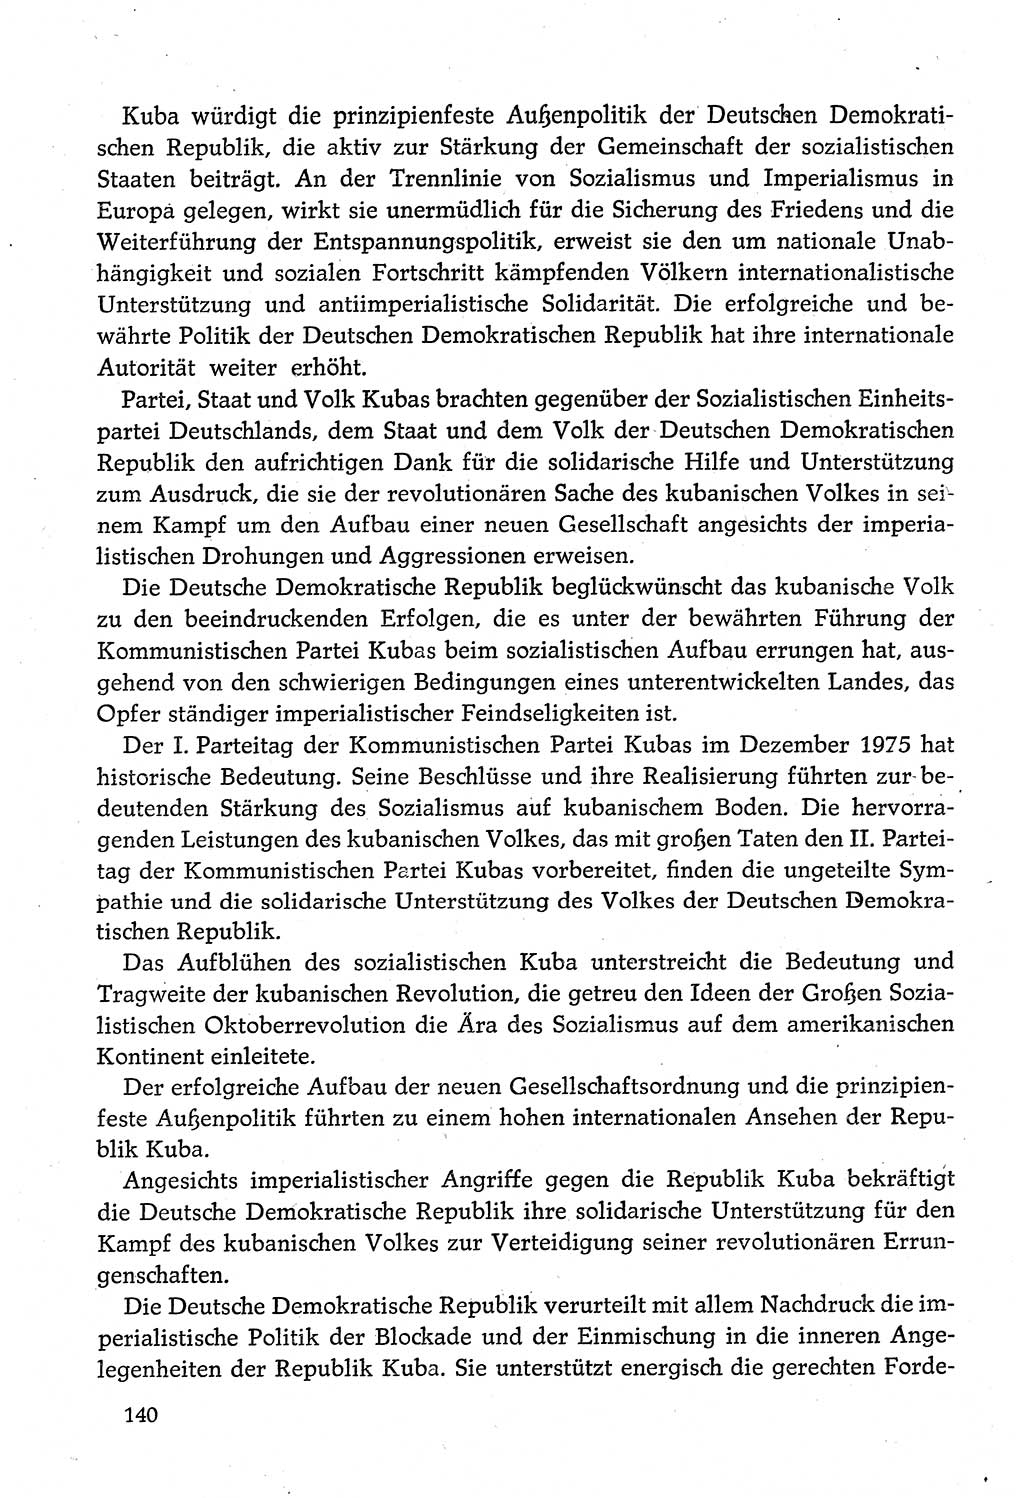 Dokumente der Sozialistischen Einheitspartei Deutschlands (SED) [Deutsche Demokratische Republik (DDR)] 1980-1981, Seite 140 (Dok. SED DDR 1980-1981, S. 140)